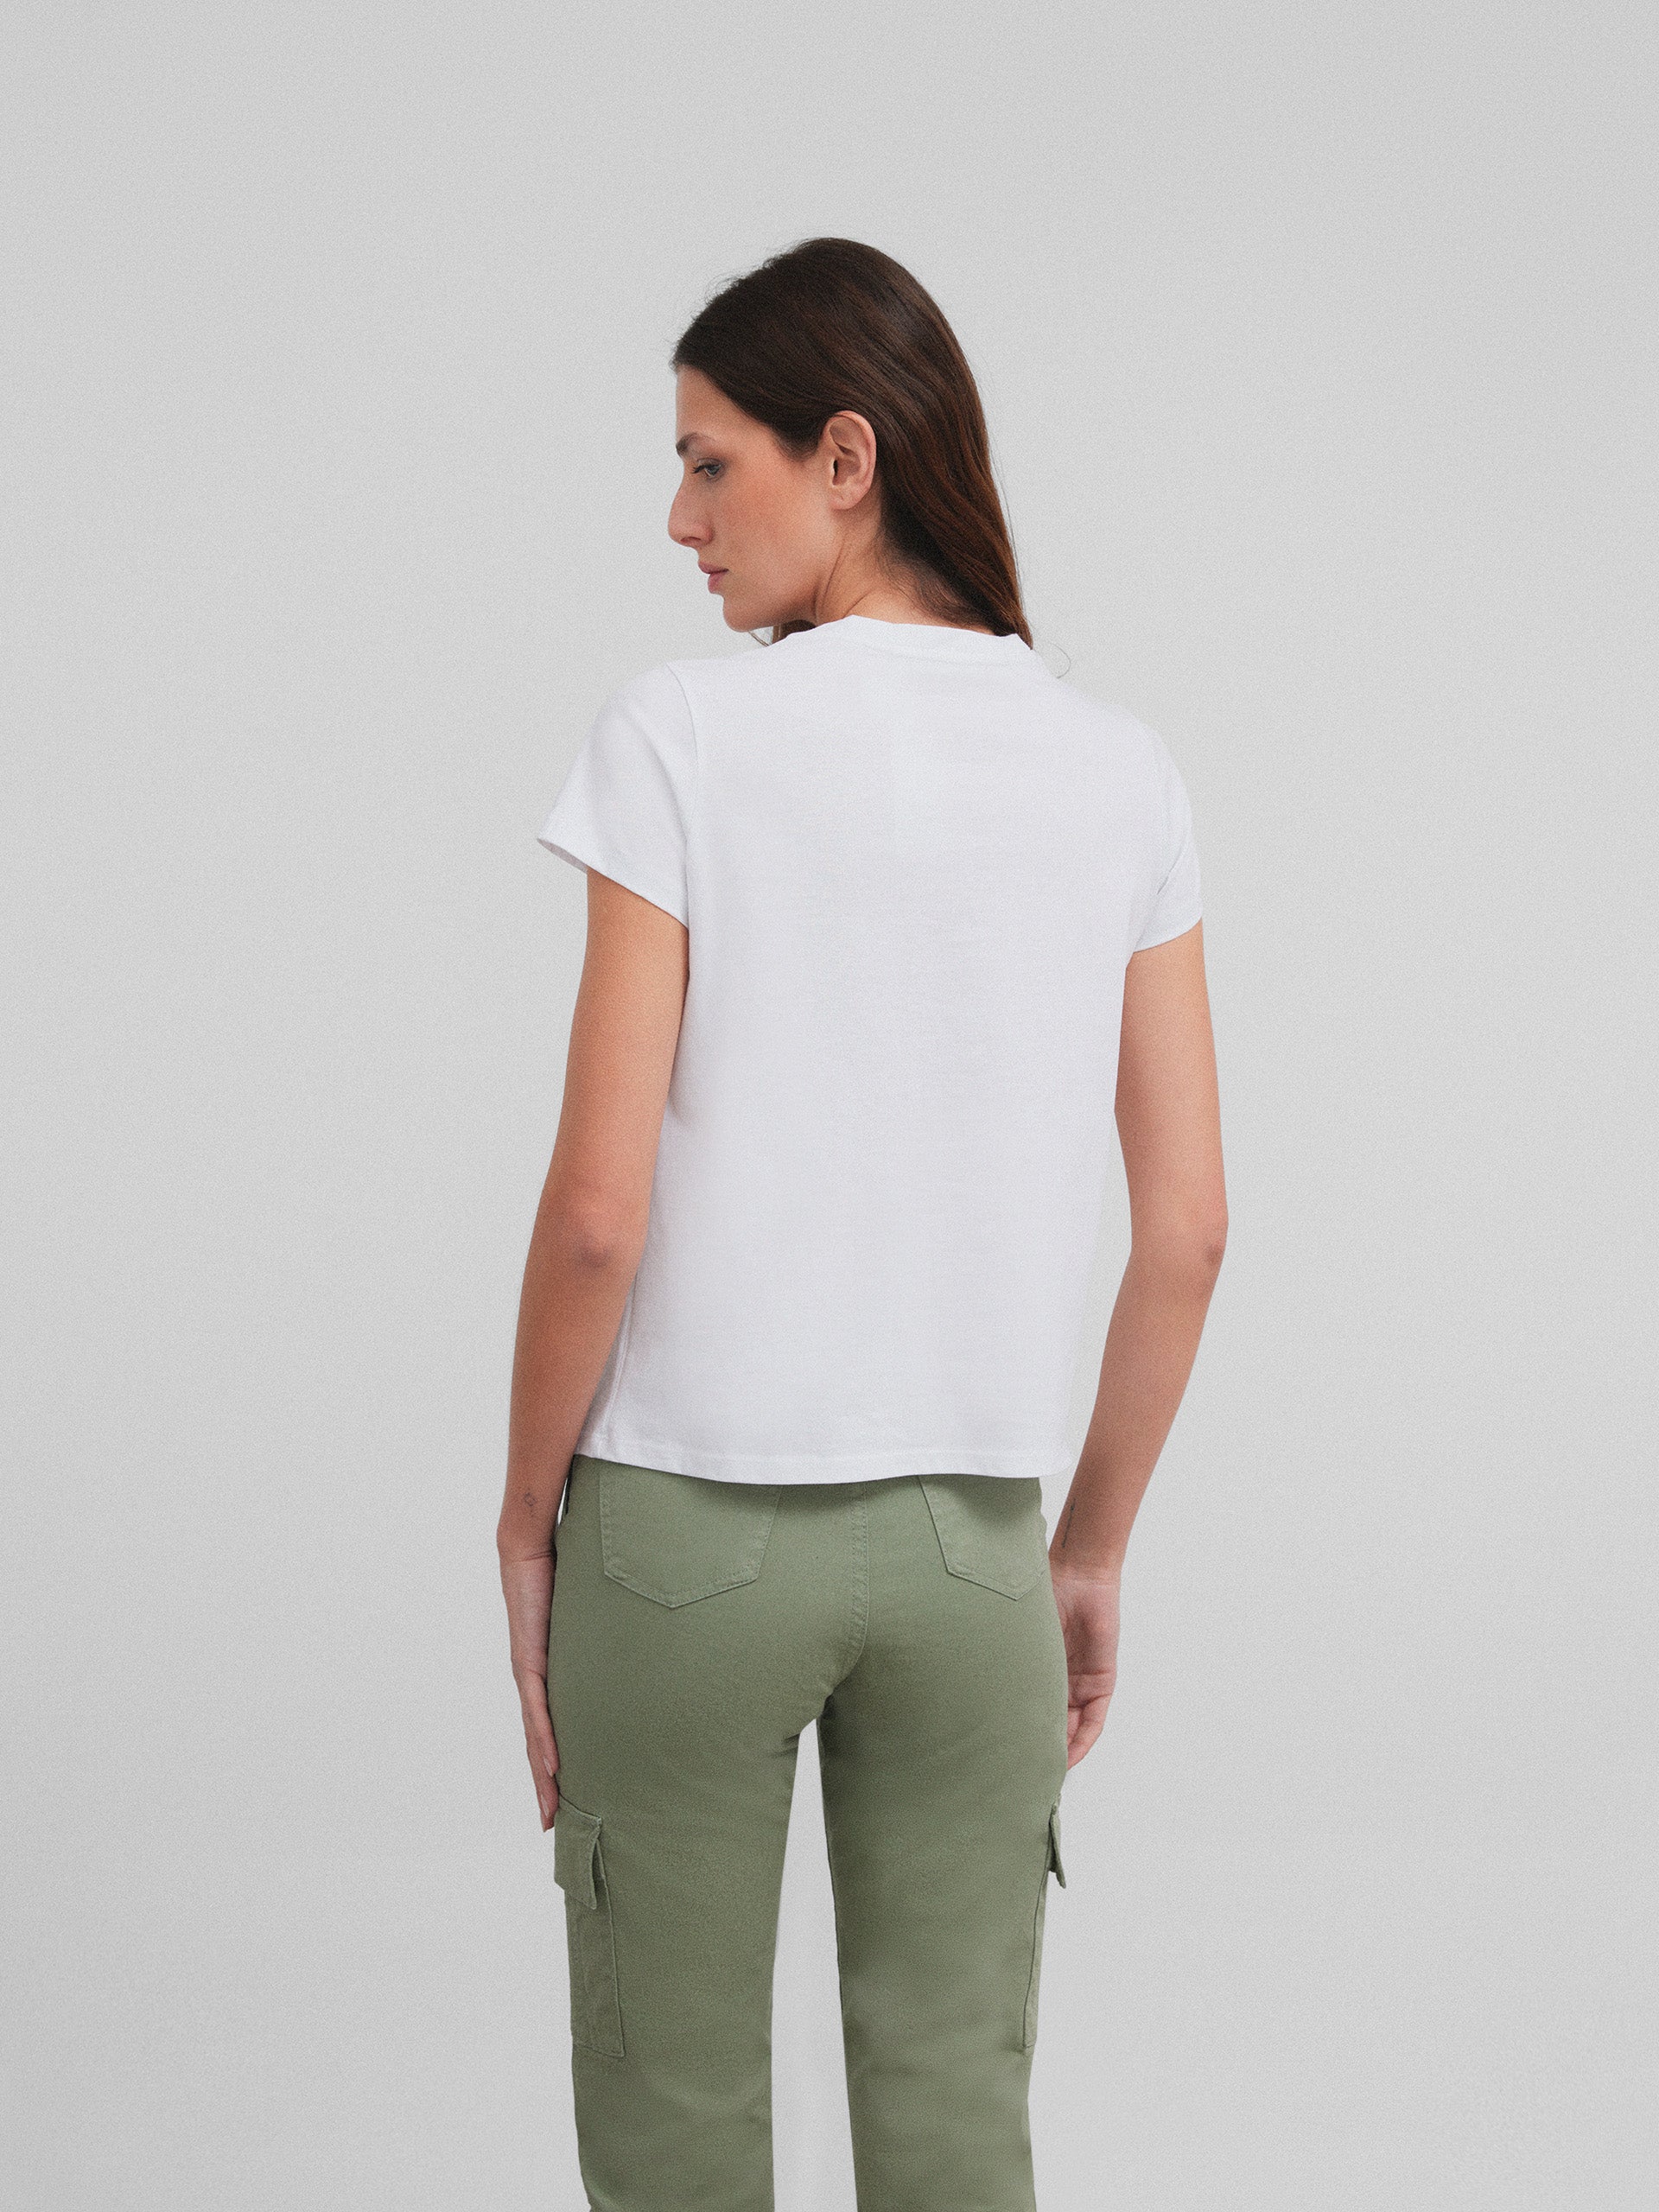 White printed women's t-shirt